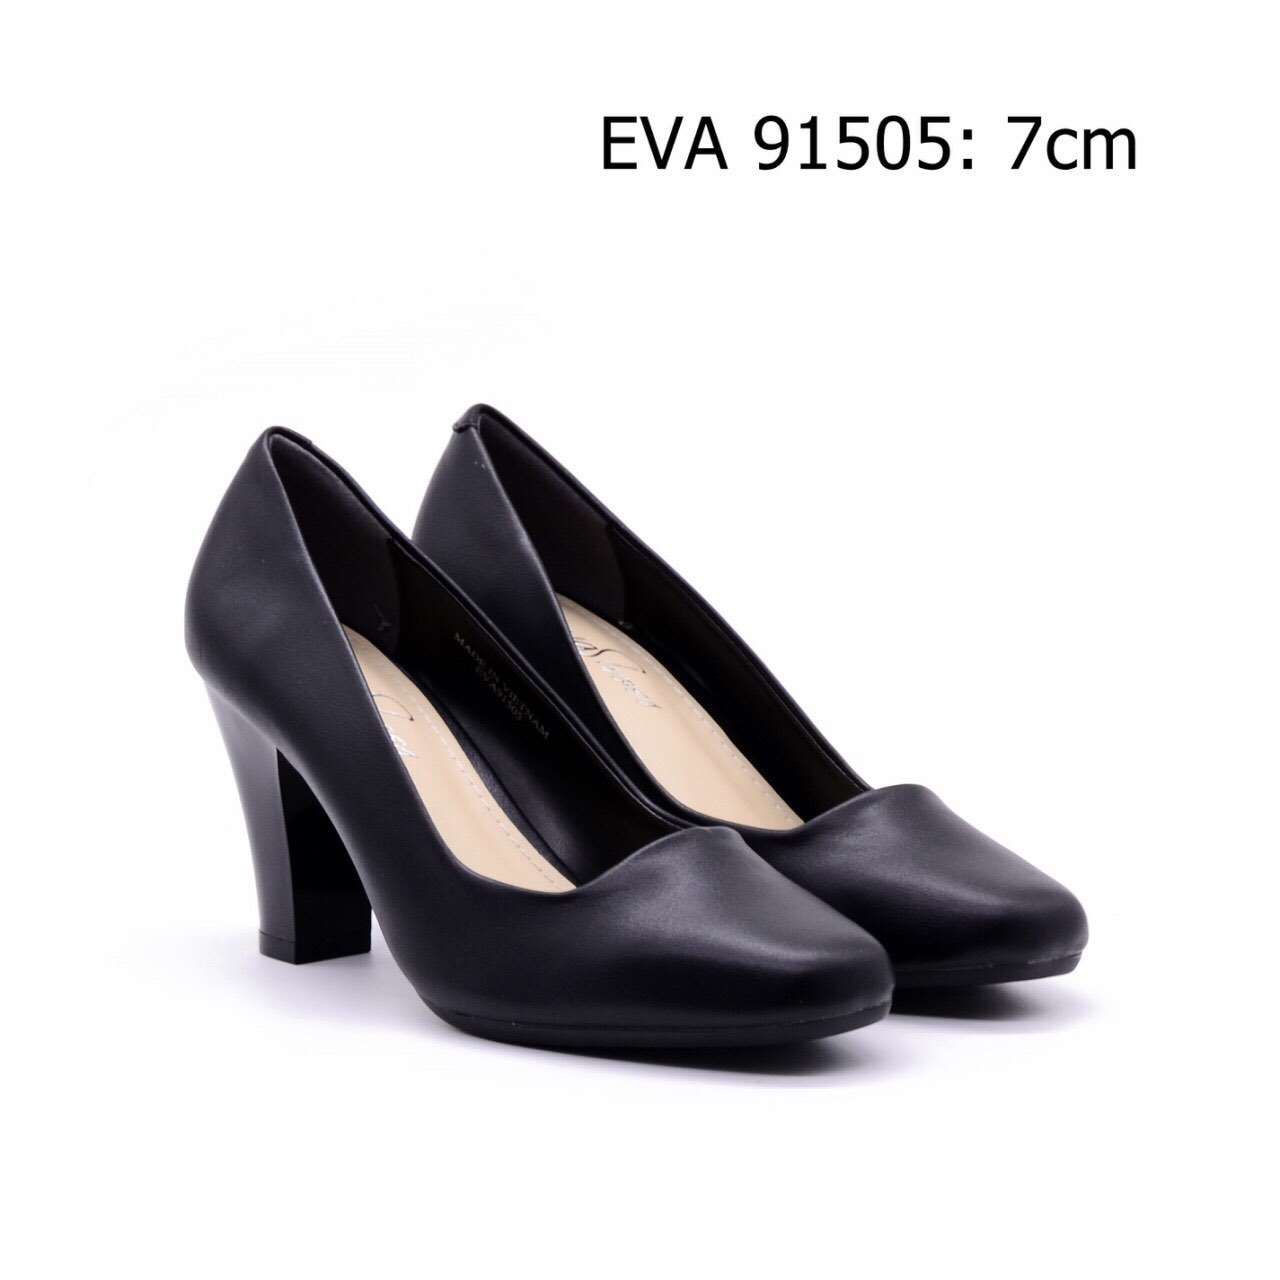 Giày công sở đế to thanh nhã EVA91505 cao 7cm.